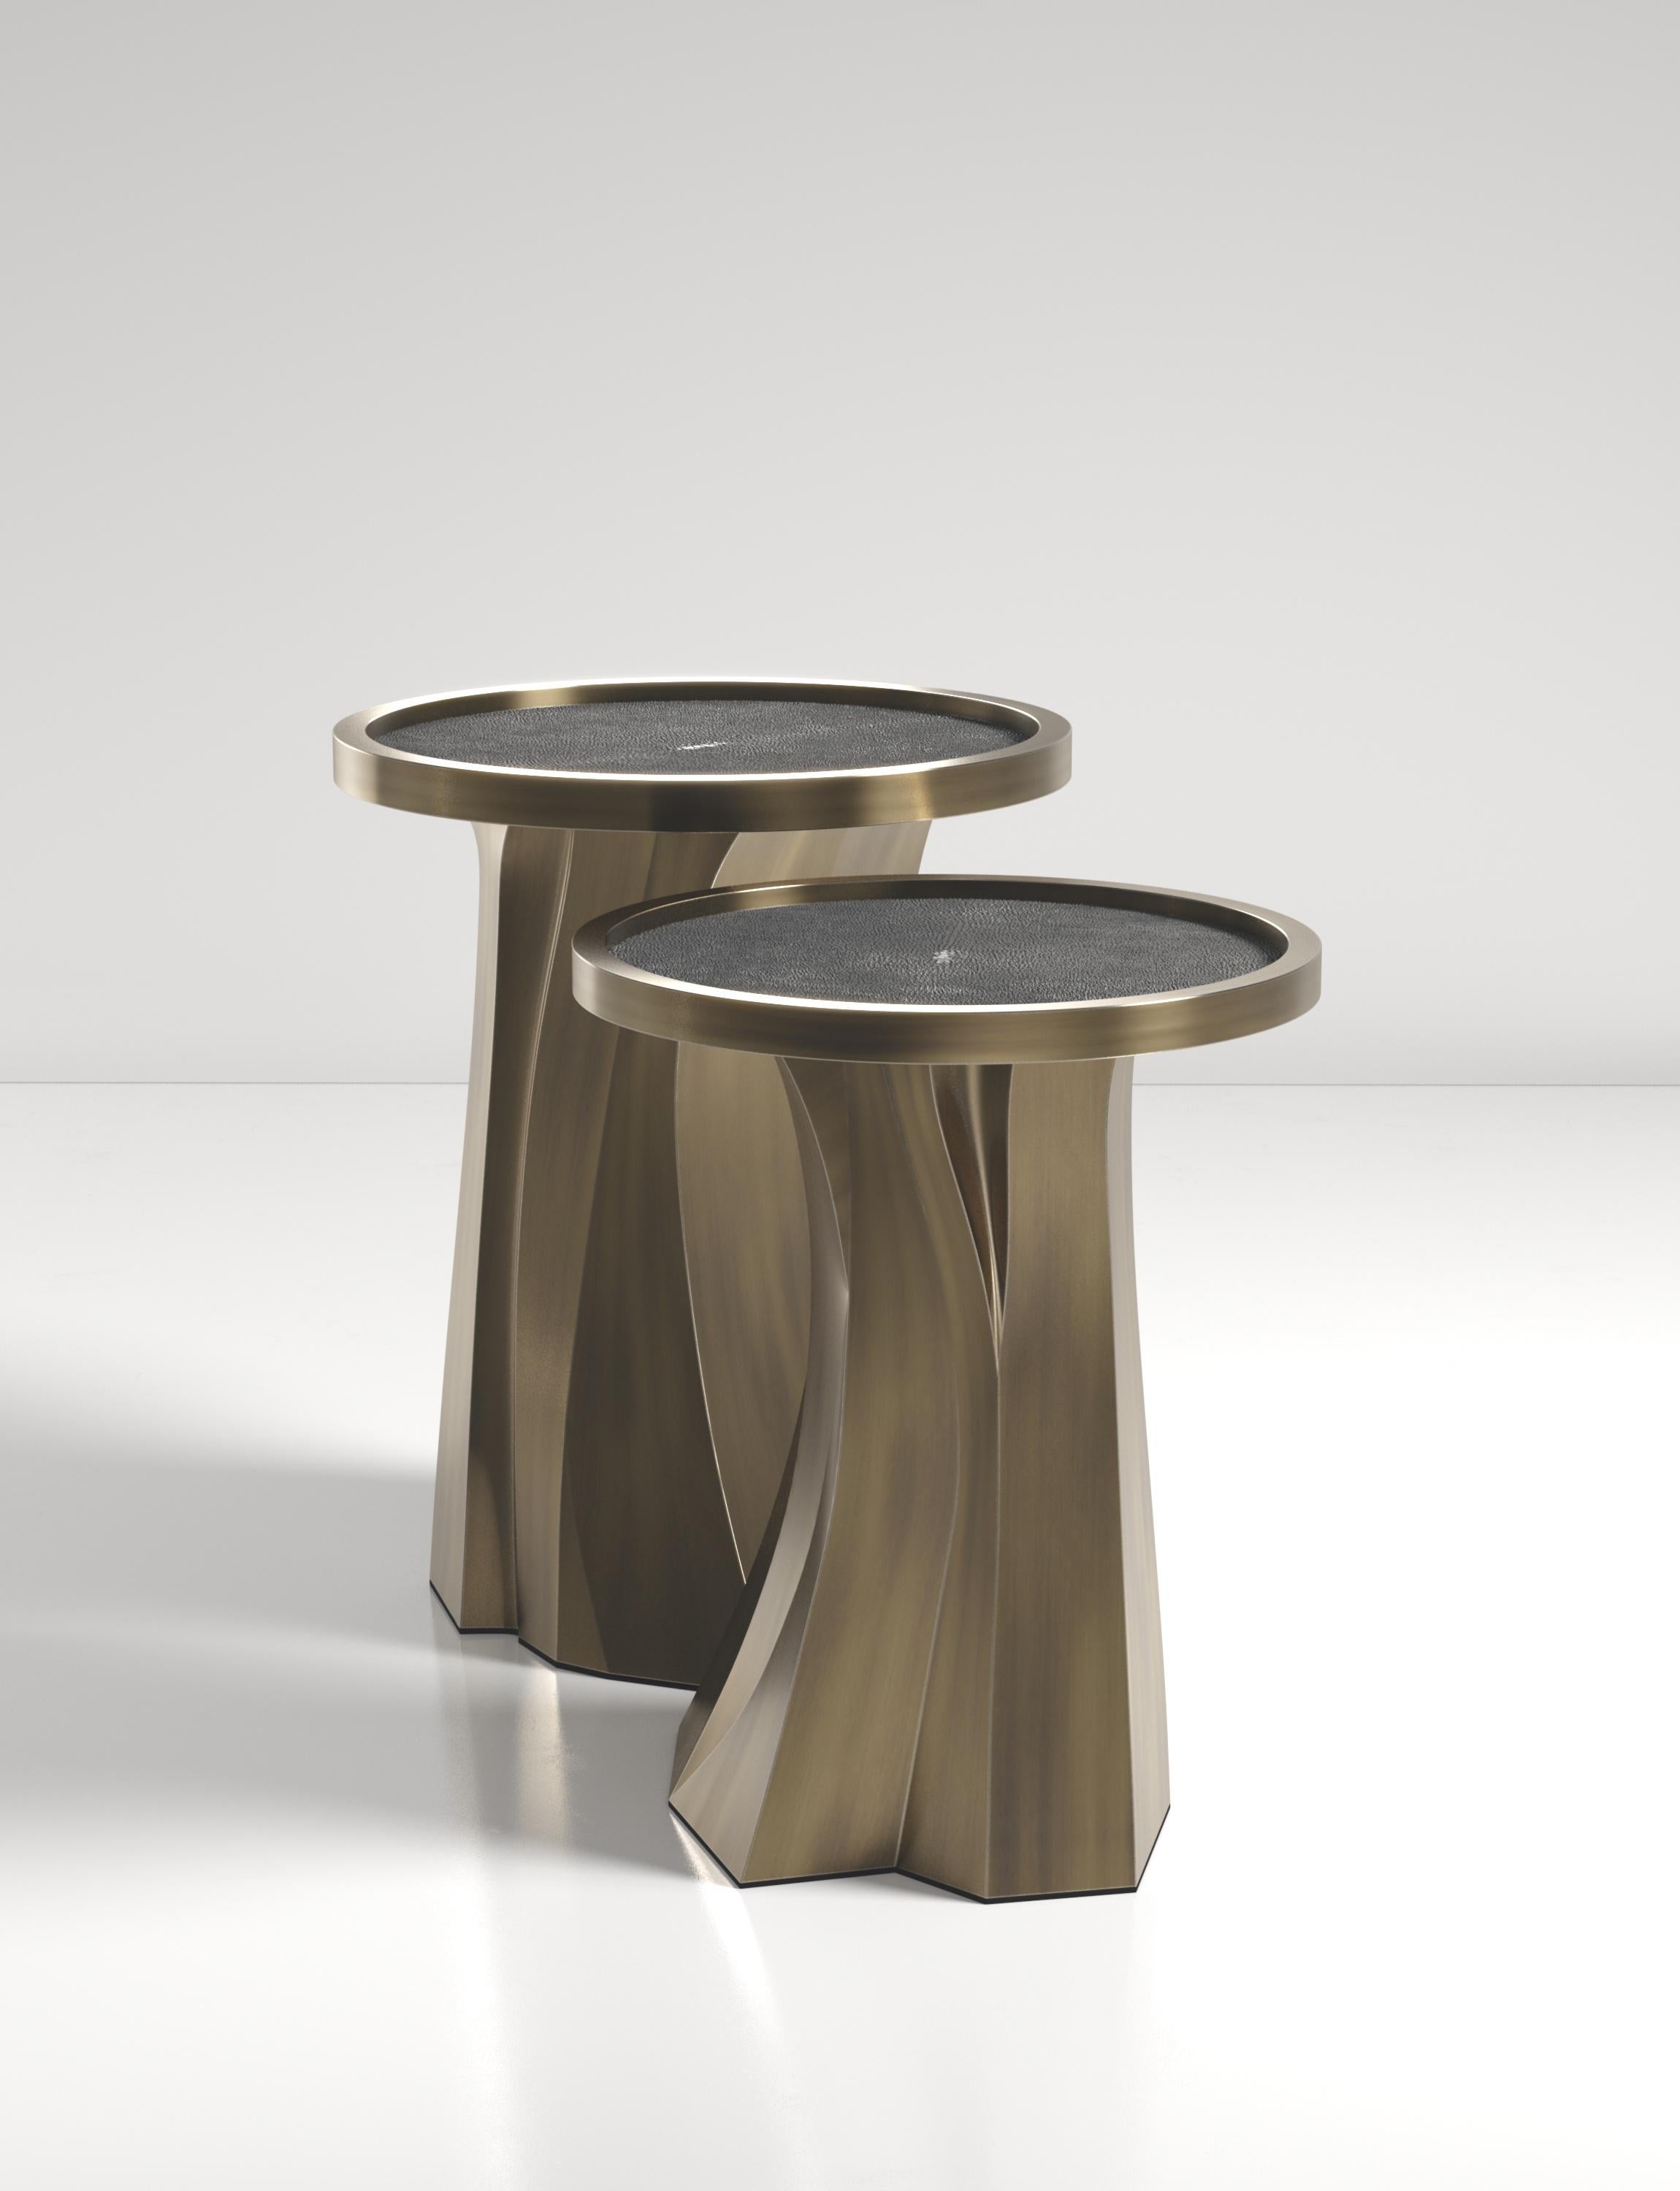 Les tables gigognes Alma de R&Y Augousti sont des pièces sculpturales et polyvalentes. Le plateau incrusté de galuchat noir se transforme en un spectaculaire socle en patine de bronze sculpté à la main. Les rainures et les détails de la base